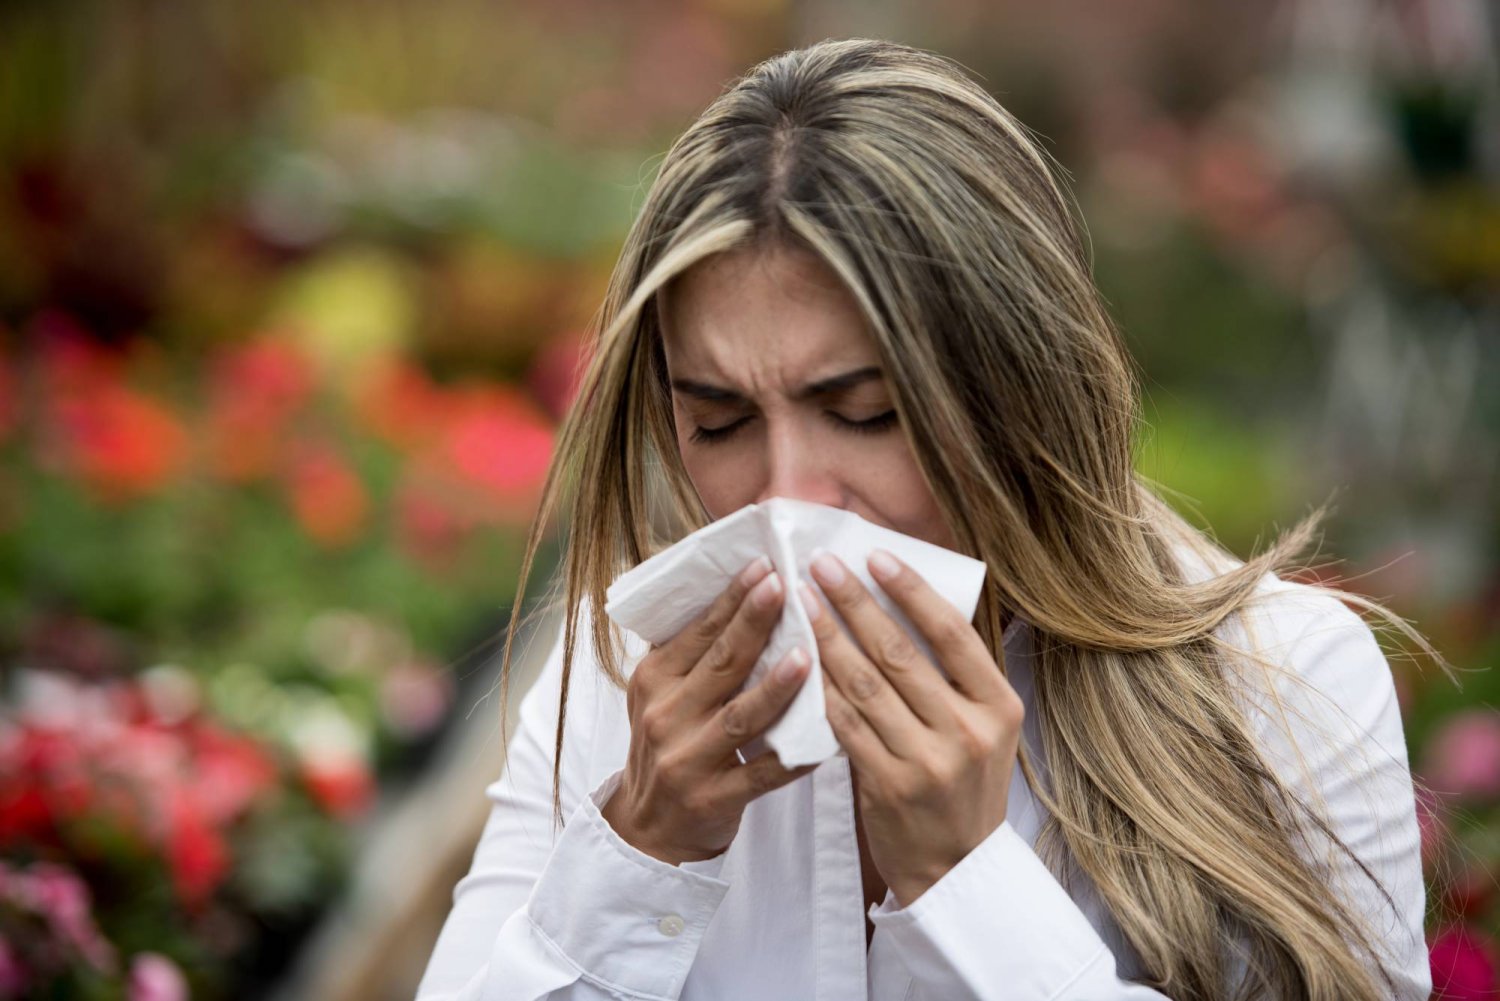 كيف تعرف أنك تعاني من حساسية الغبار؟ إليك العلامات والأعراض